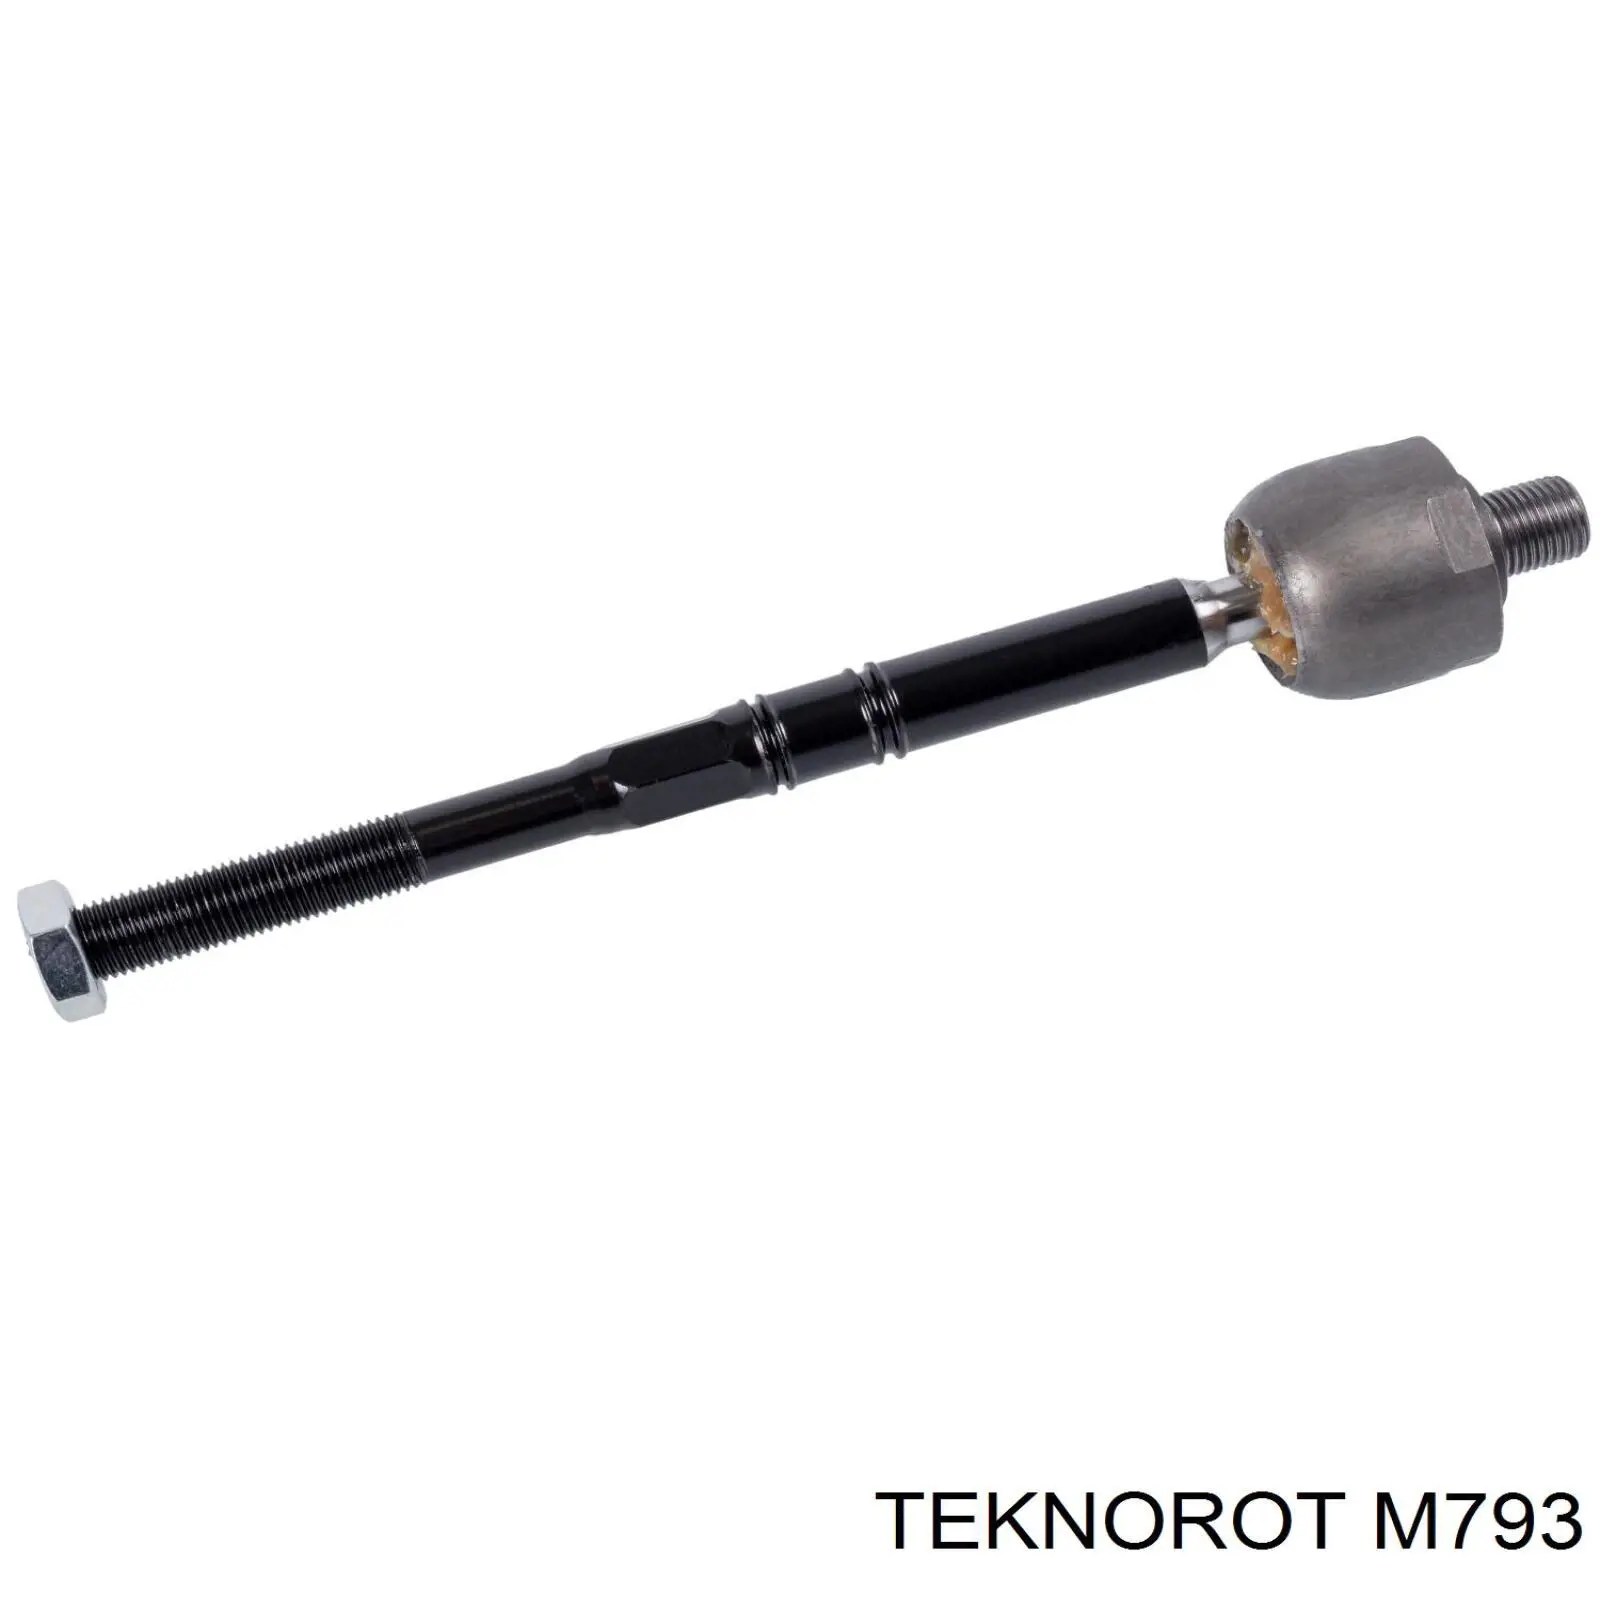 M-793 Teknorot tração de direção